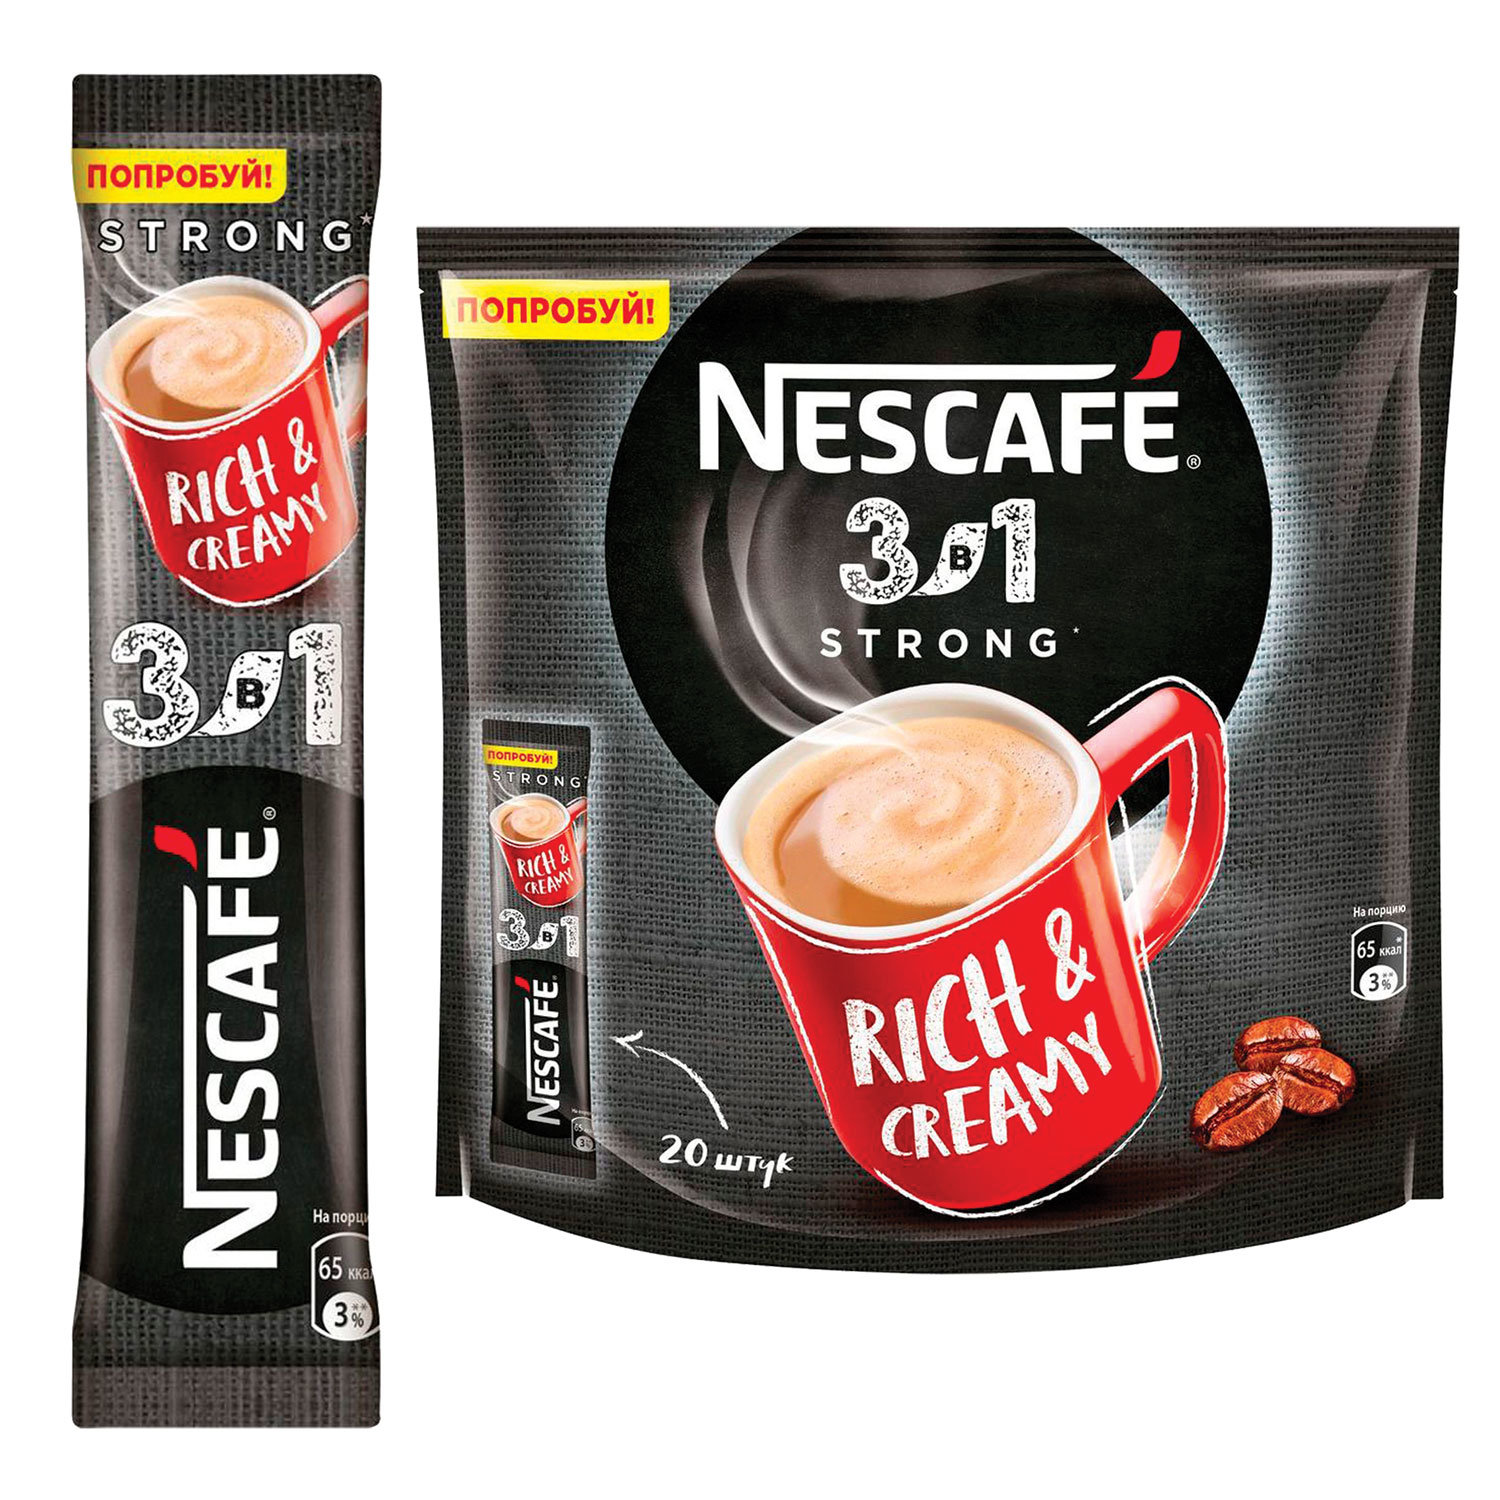 Nescafe 3в1. Nescafe 3в1 Rich & creamy. Кофе Нескафе 3 в 1 14,5г крепкий 20*20. Нескафе 3в1 кофе Классик 14,5гр упаковка стики. Кофе в пакетиках 3 в 1 Nescafe.